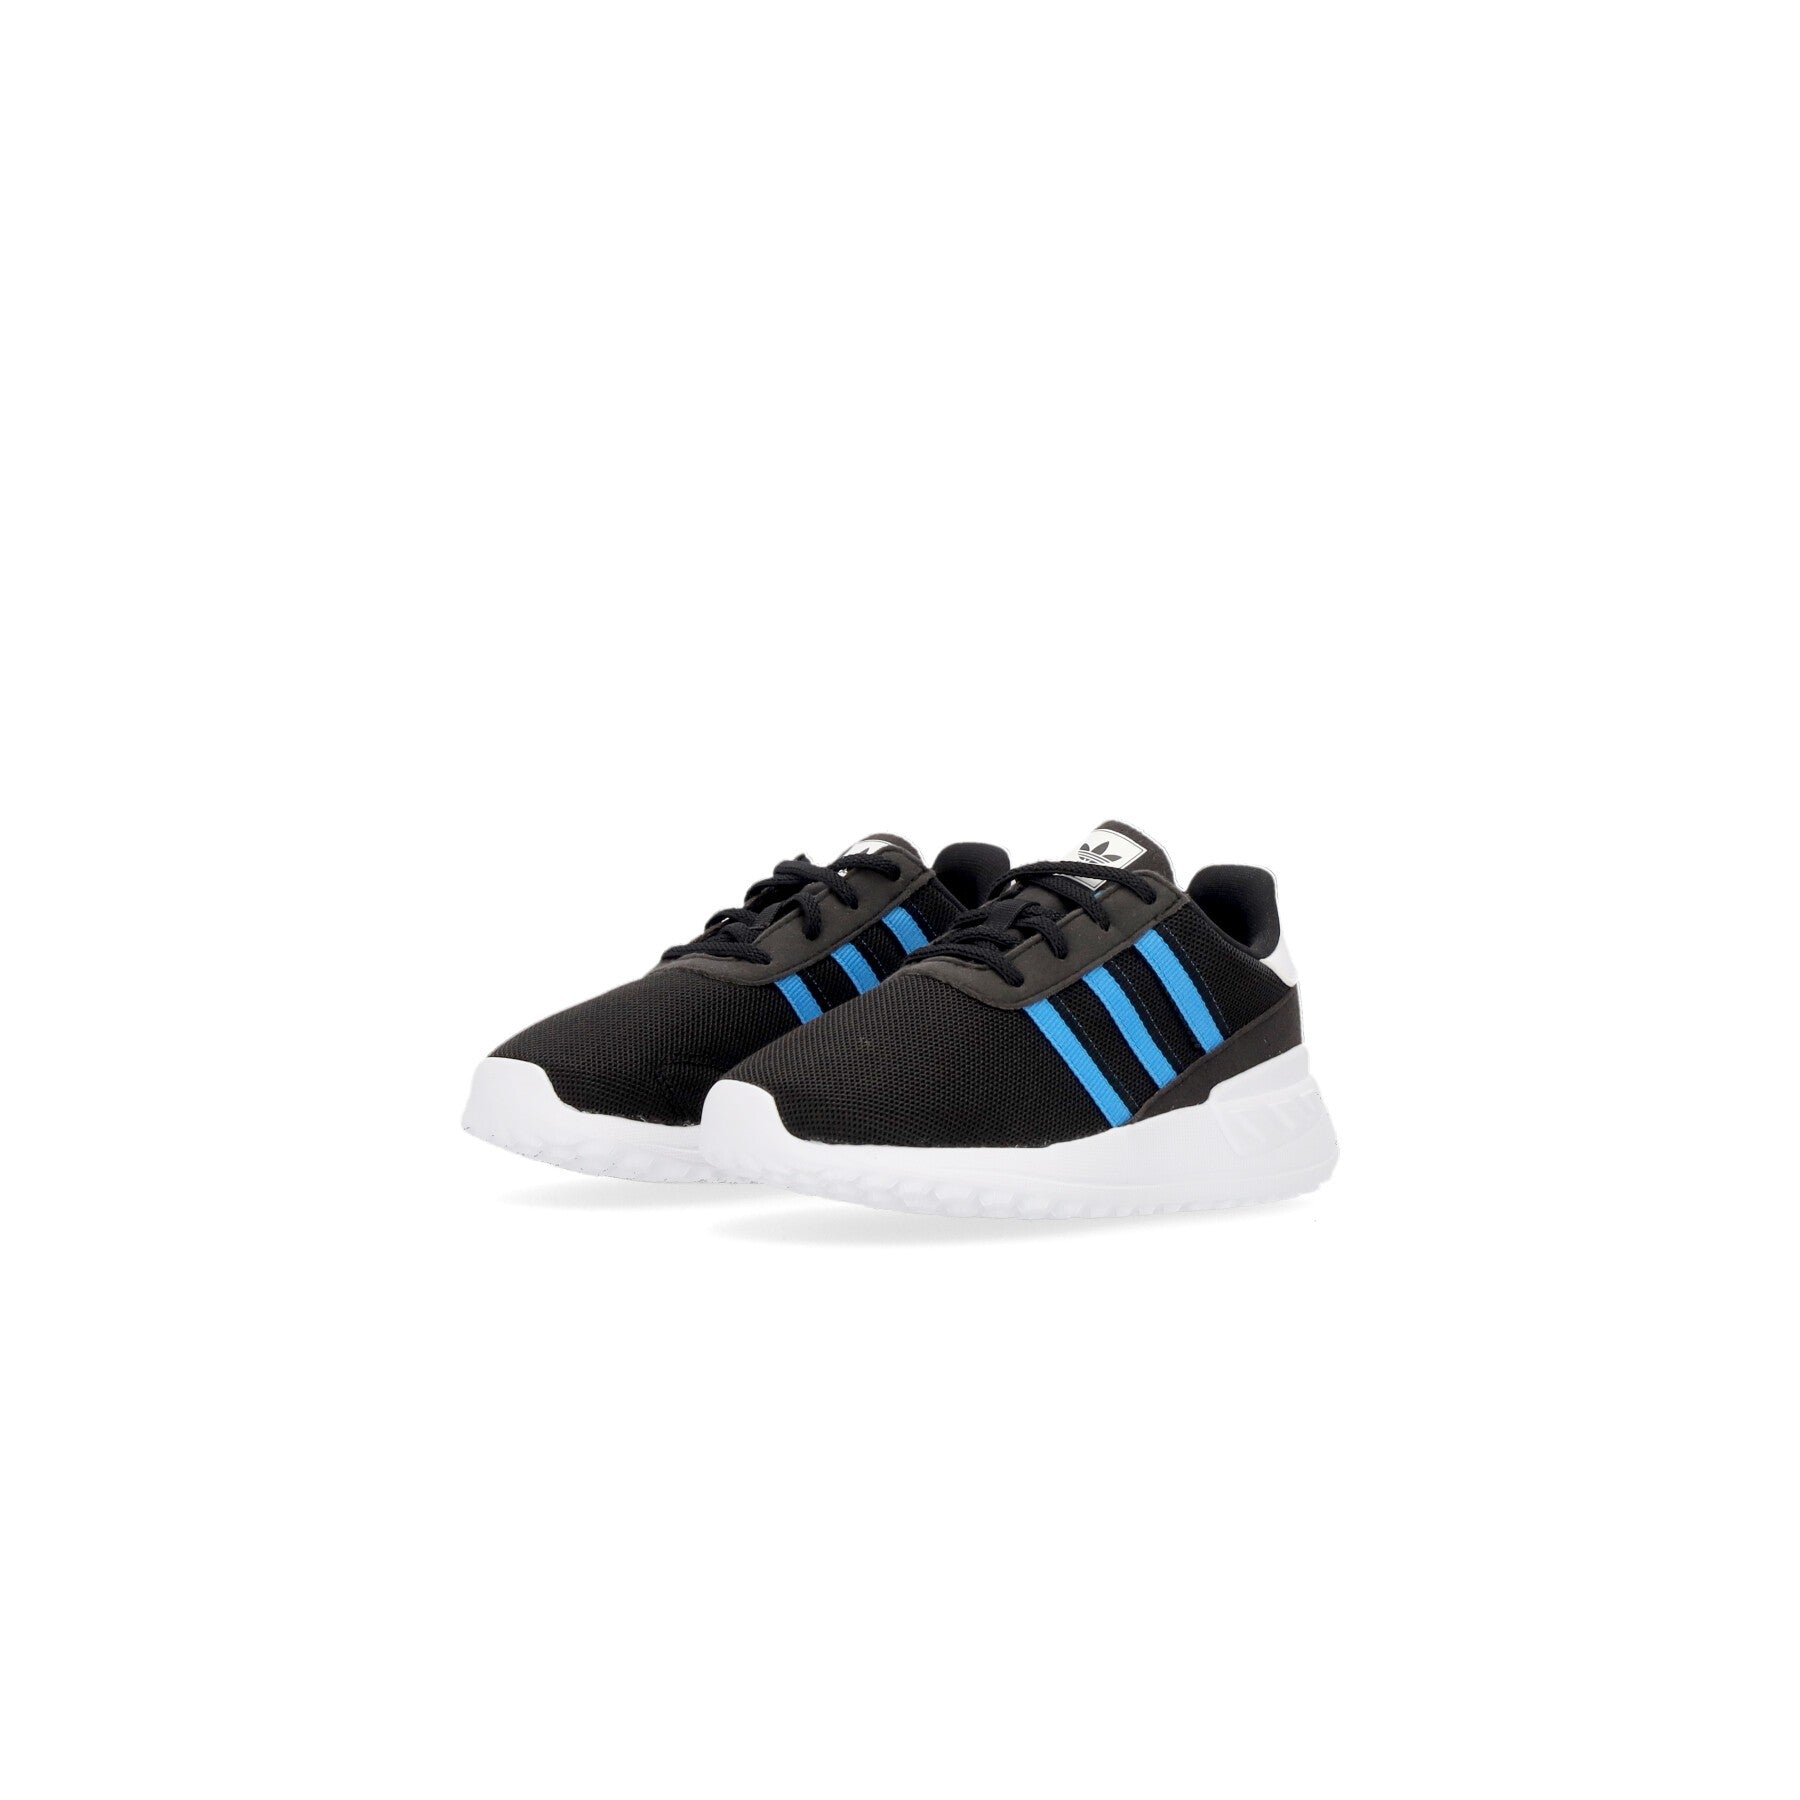 Low Shoe Child La Trainer Lite El I Core Black/blue/cloud White